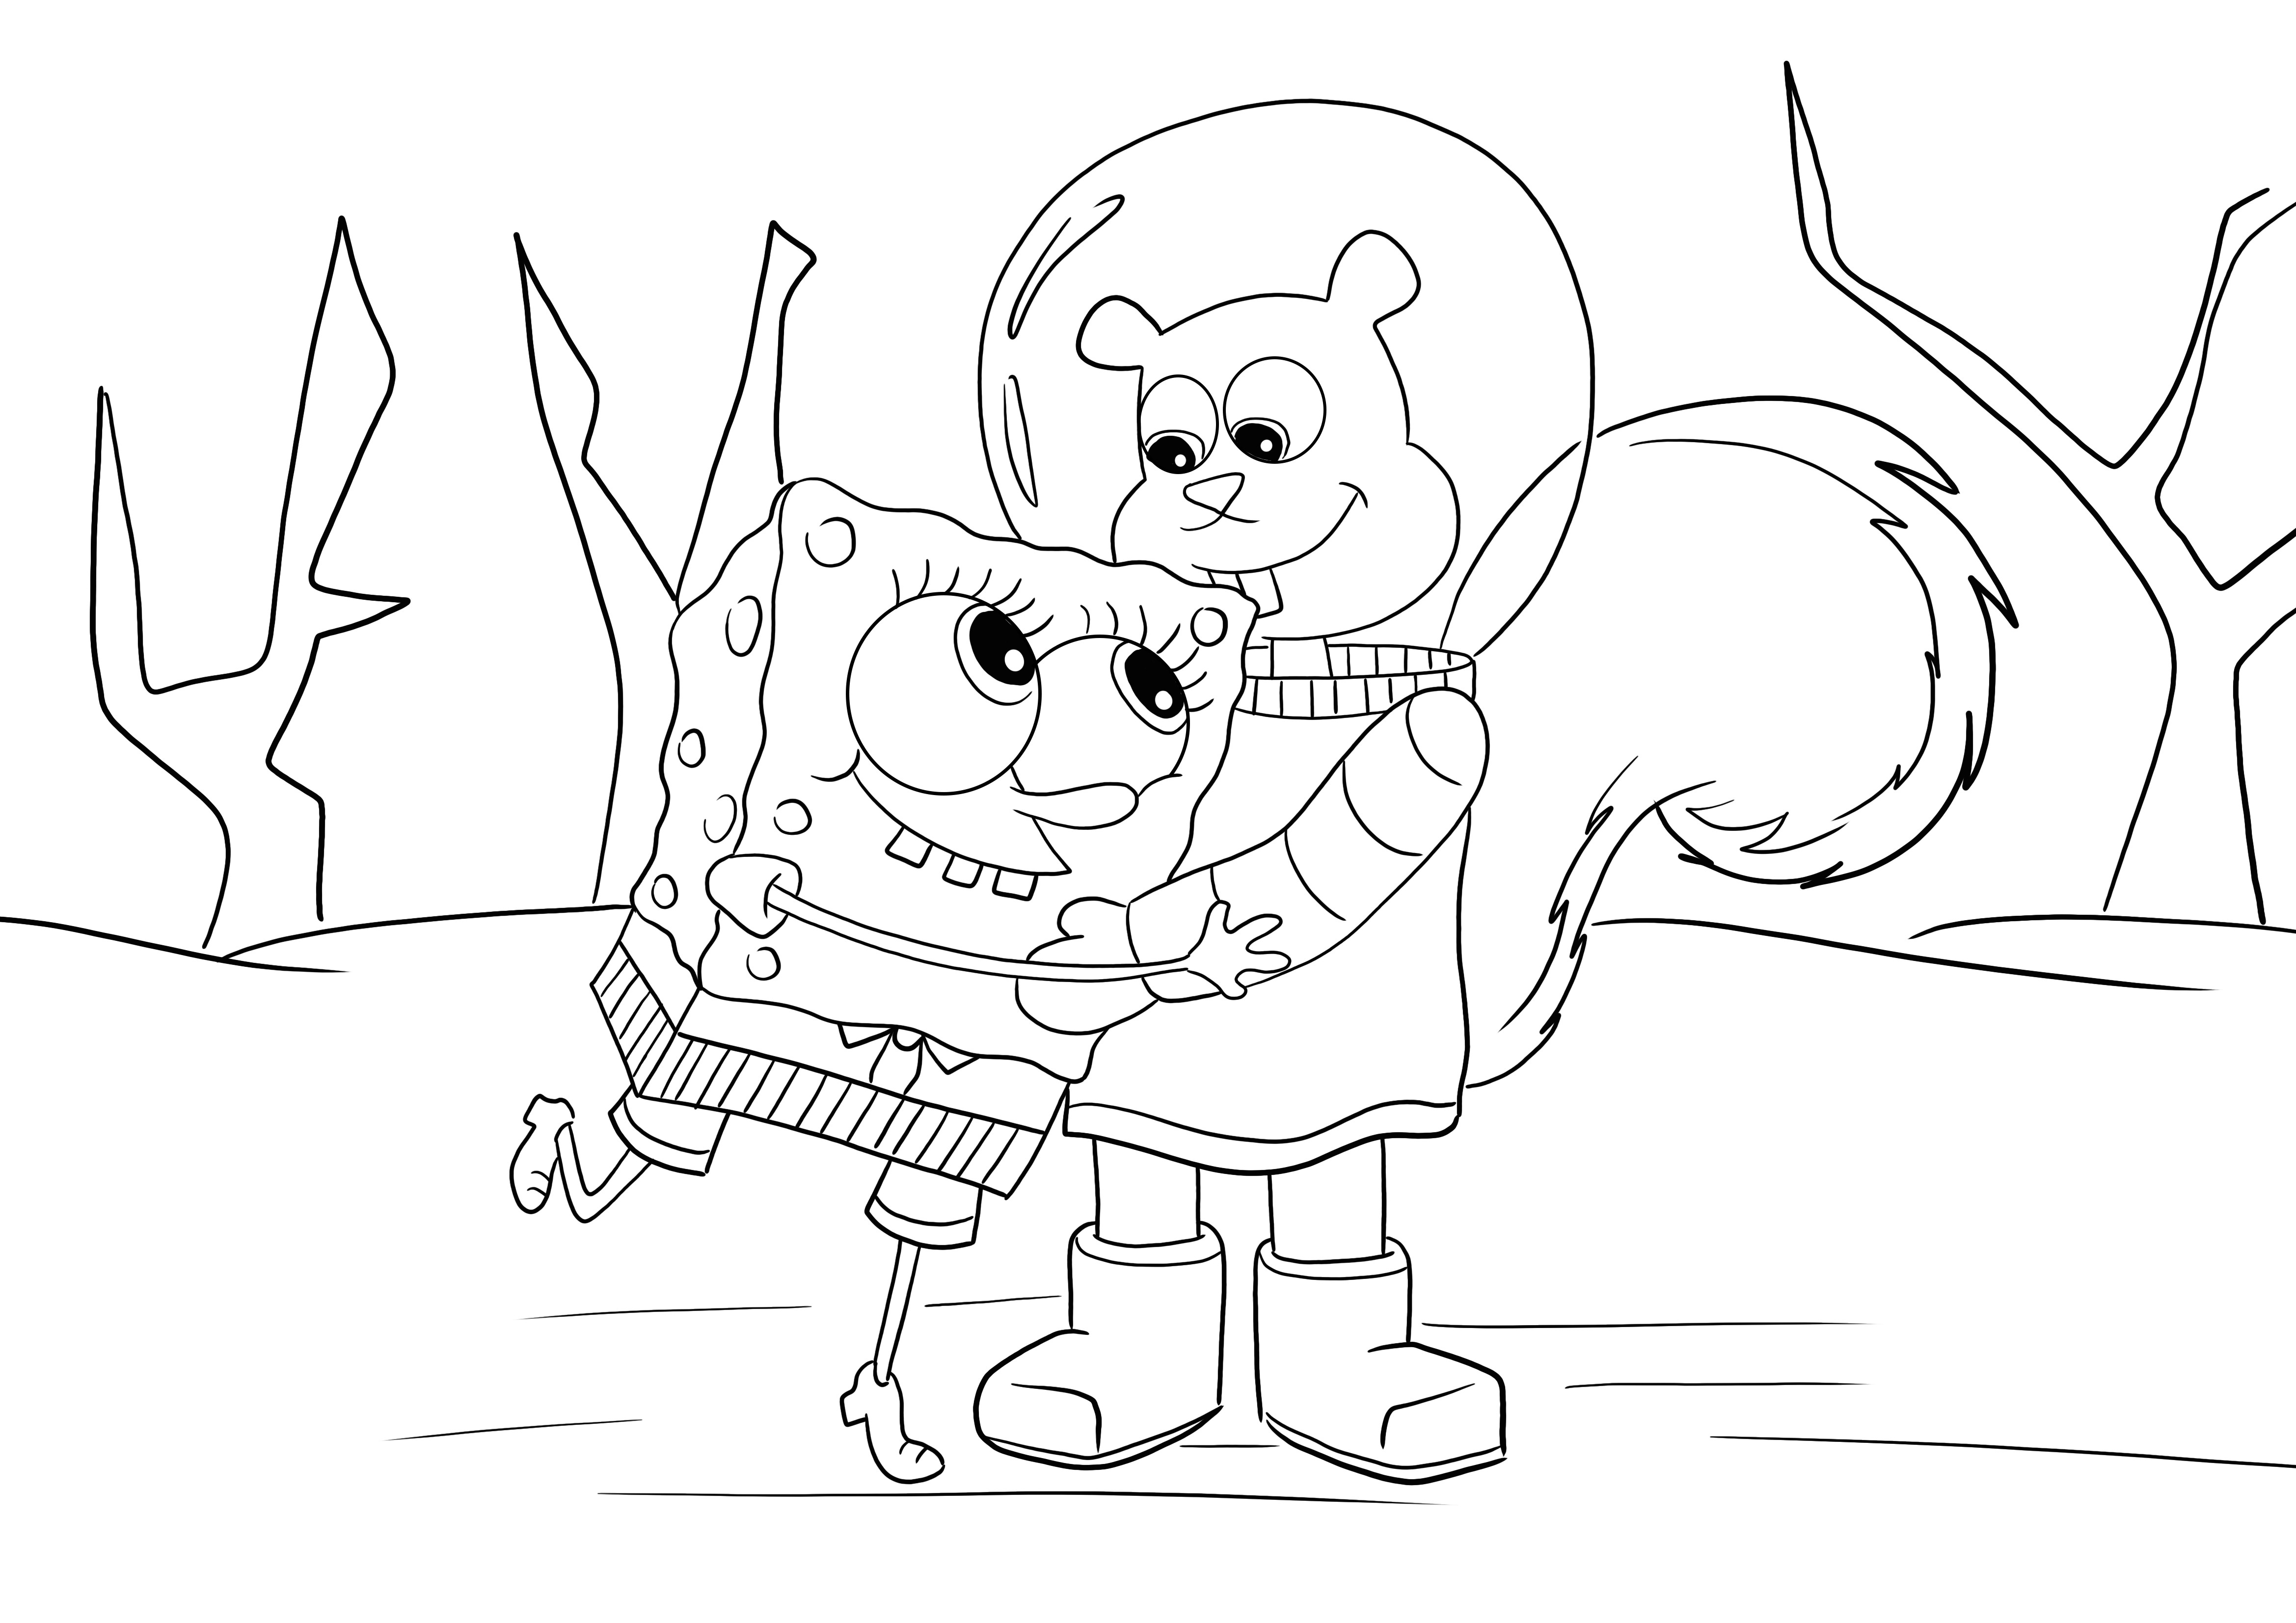 Free printable image of Sponge Bob and Sandy Chick to color for kids